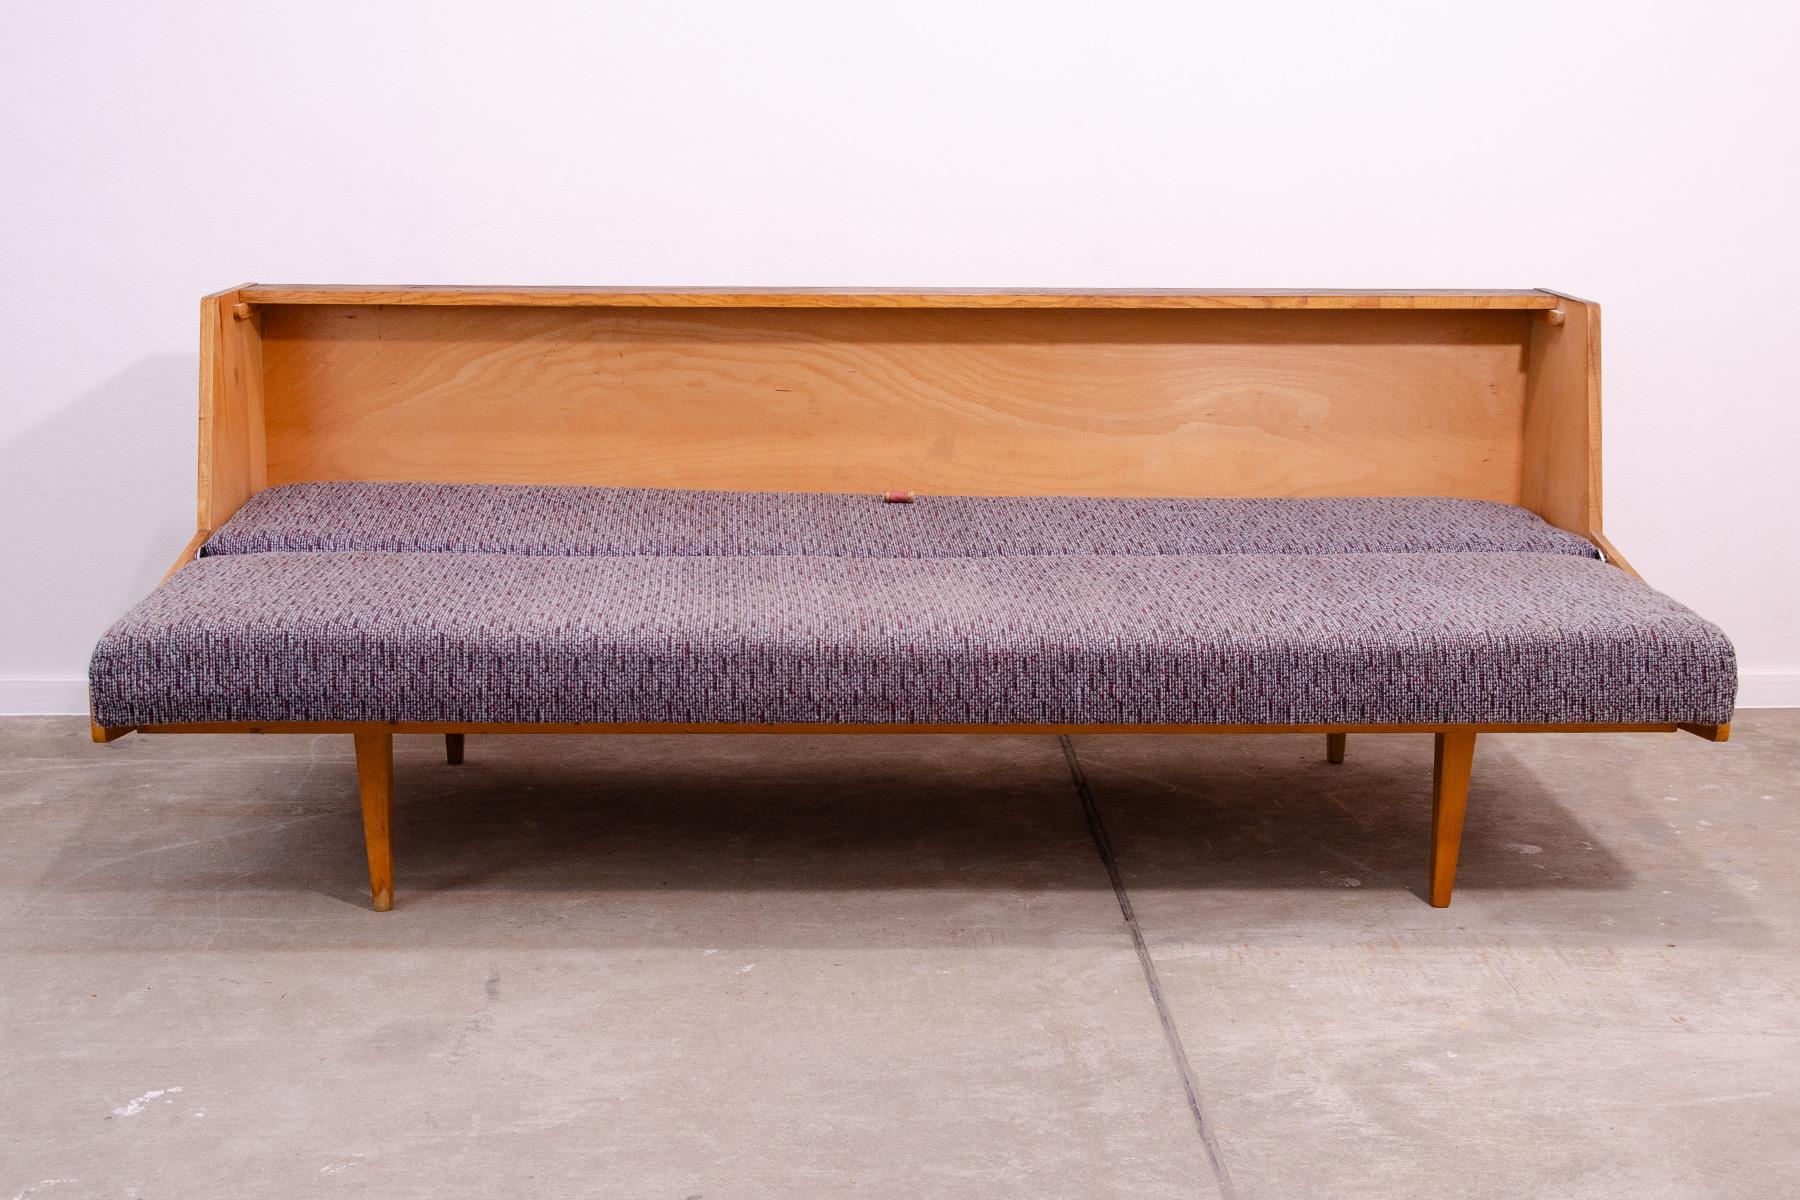 Midcentury Folding Sofabed by Tatra nabytok, 1970s, Czechoslovakia For Sale 9